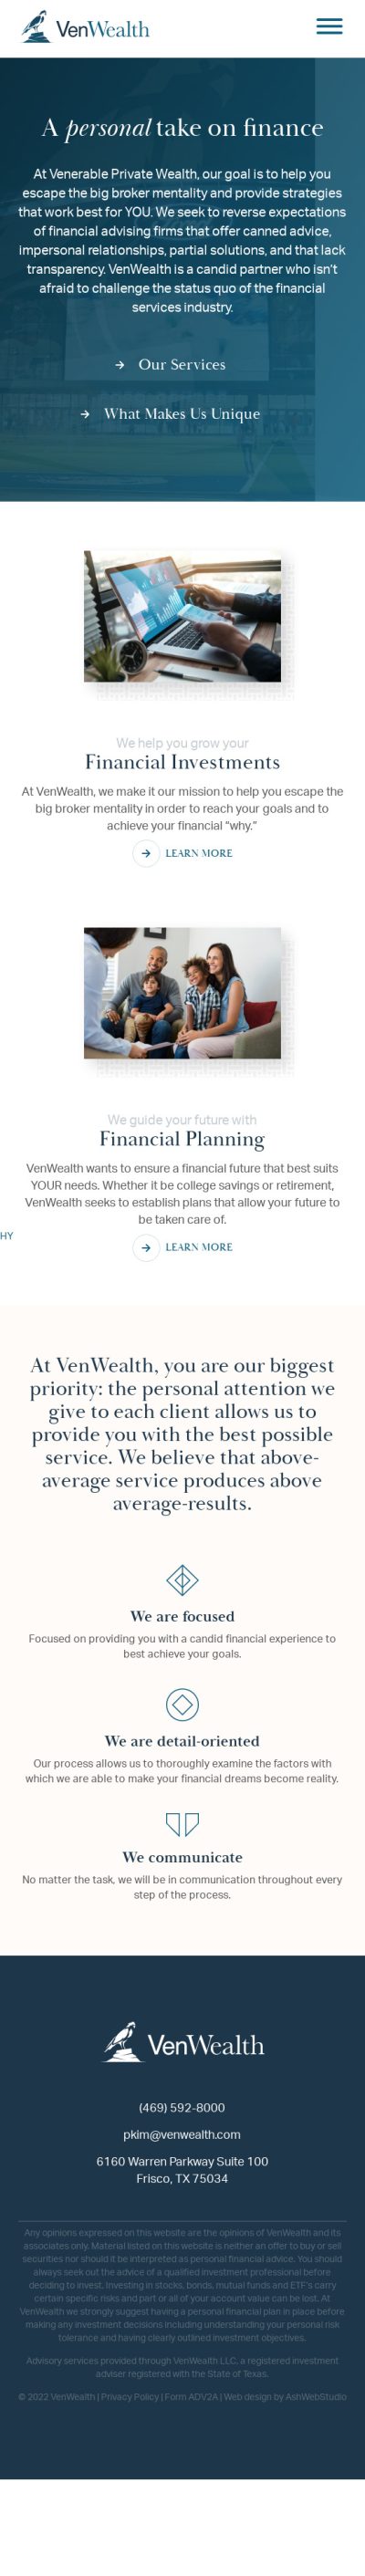 Mobile web design of VenWealth